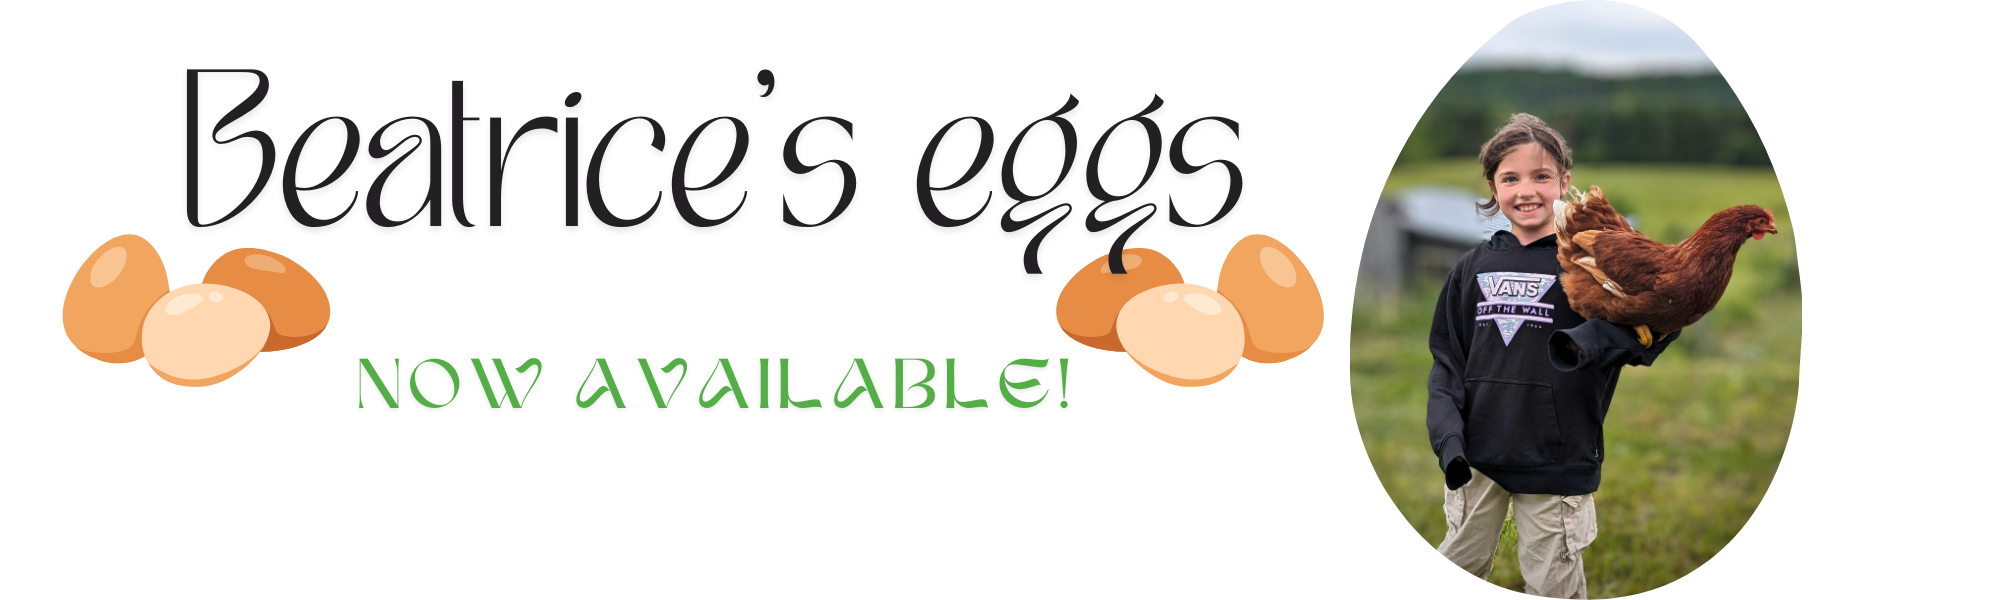 Beatrice's eggs